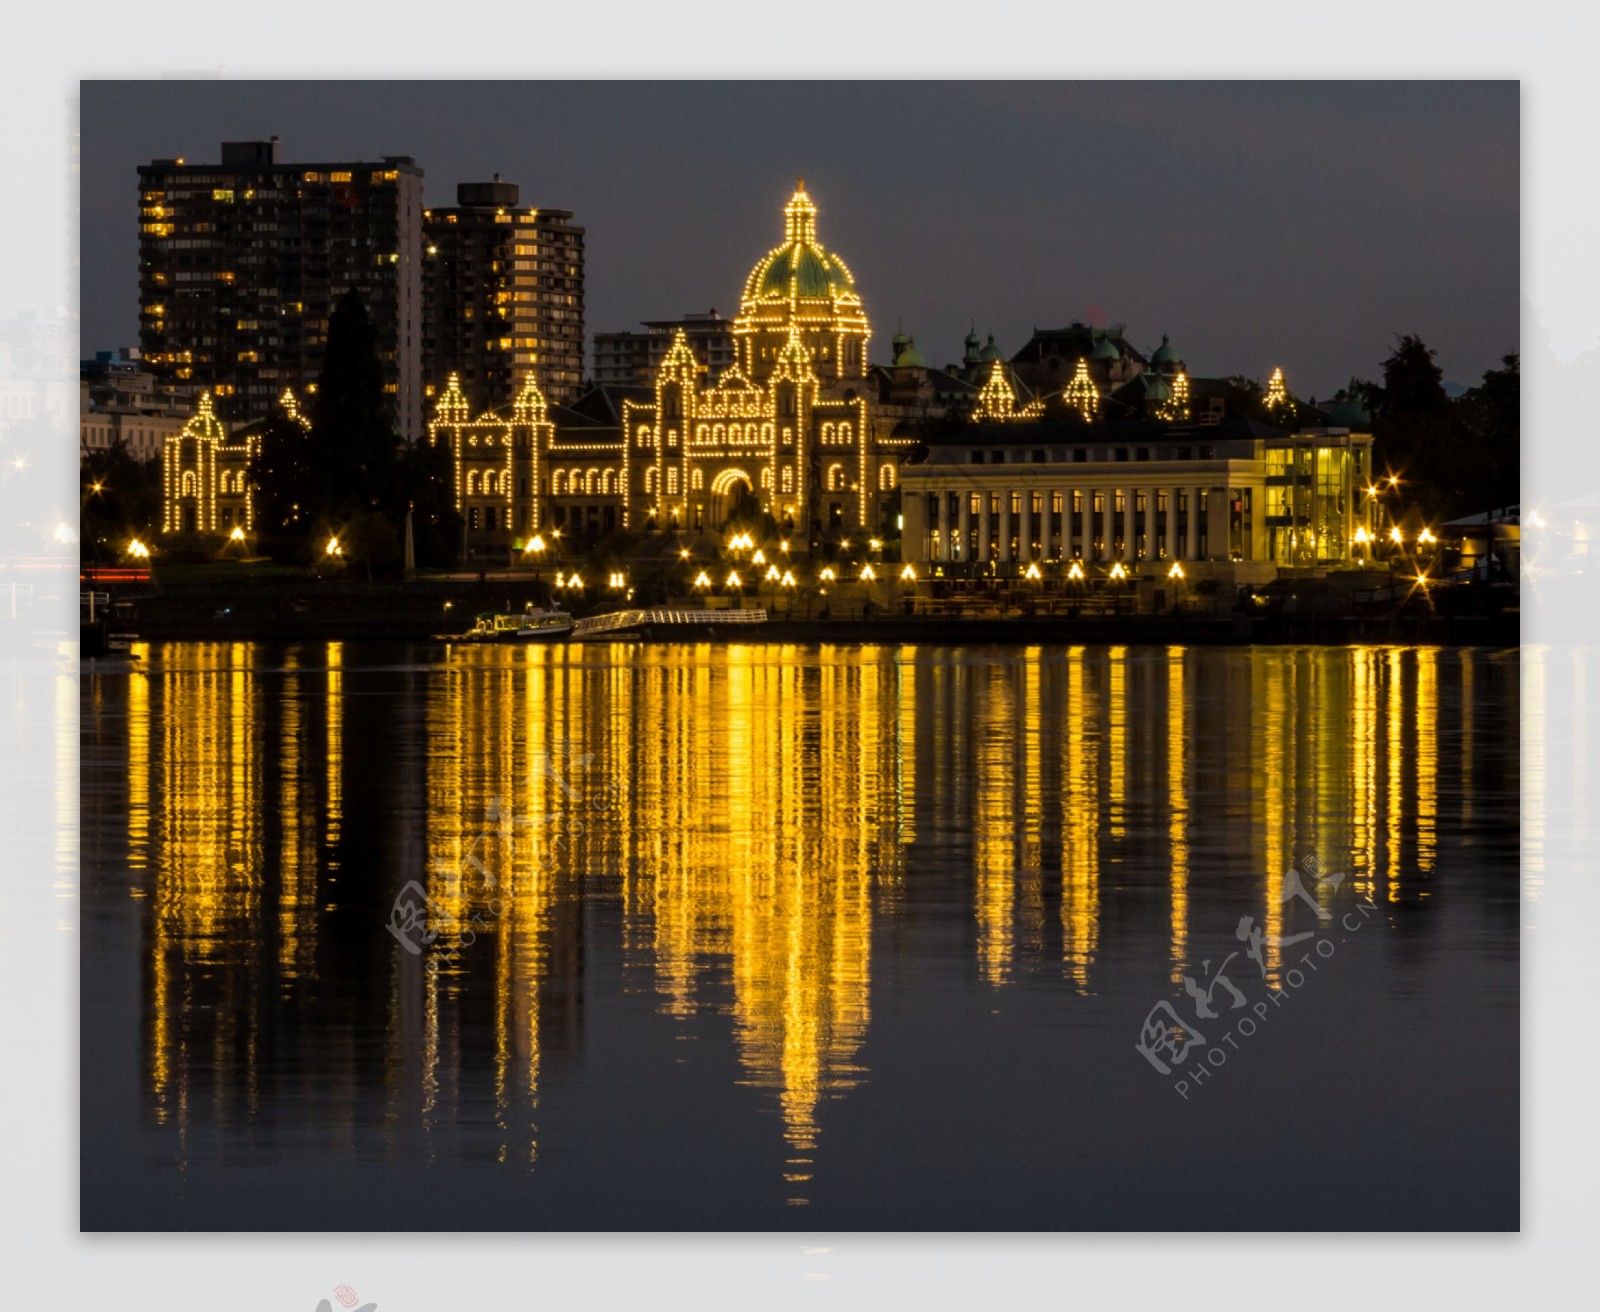 加拿大城市夜景图片